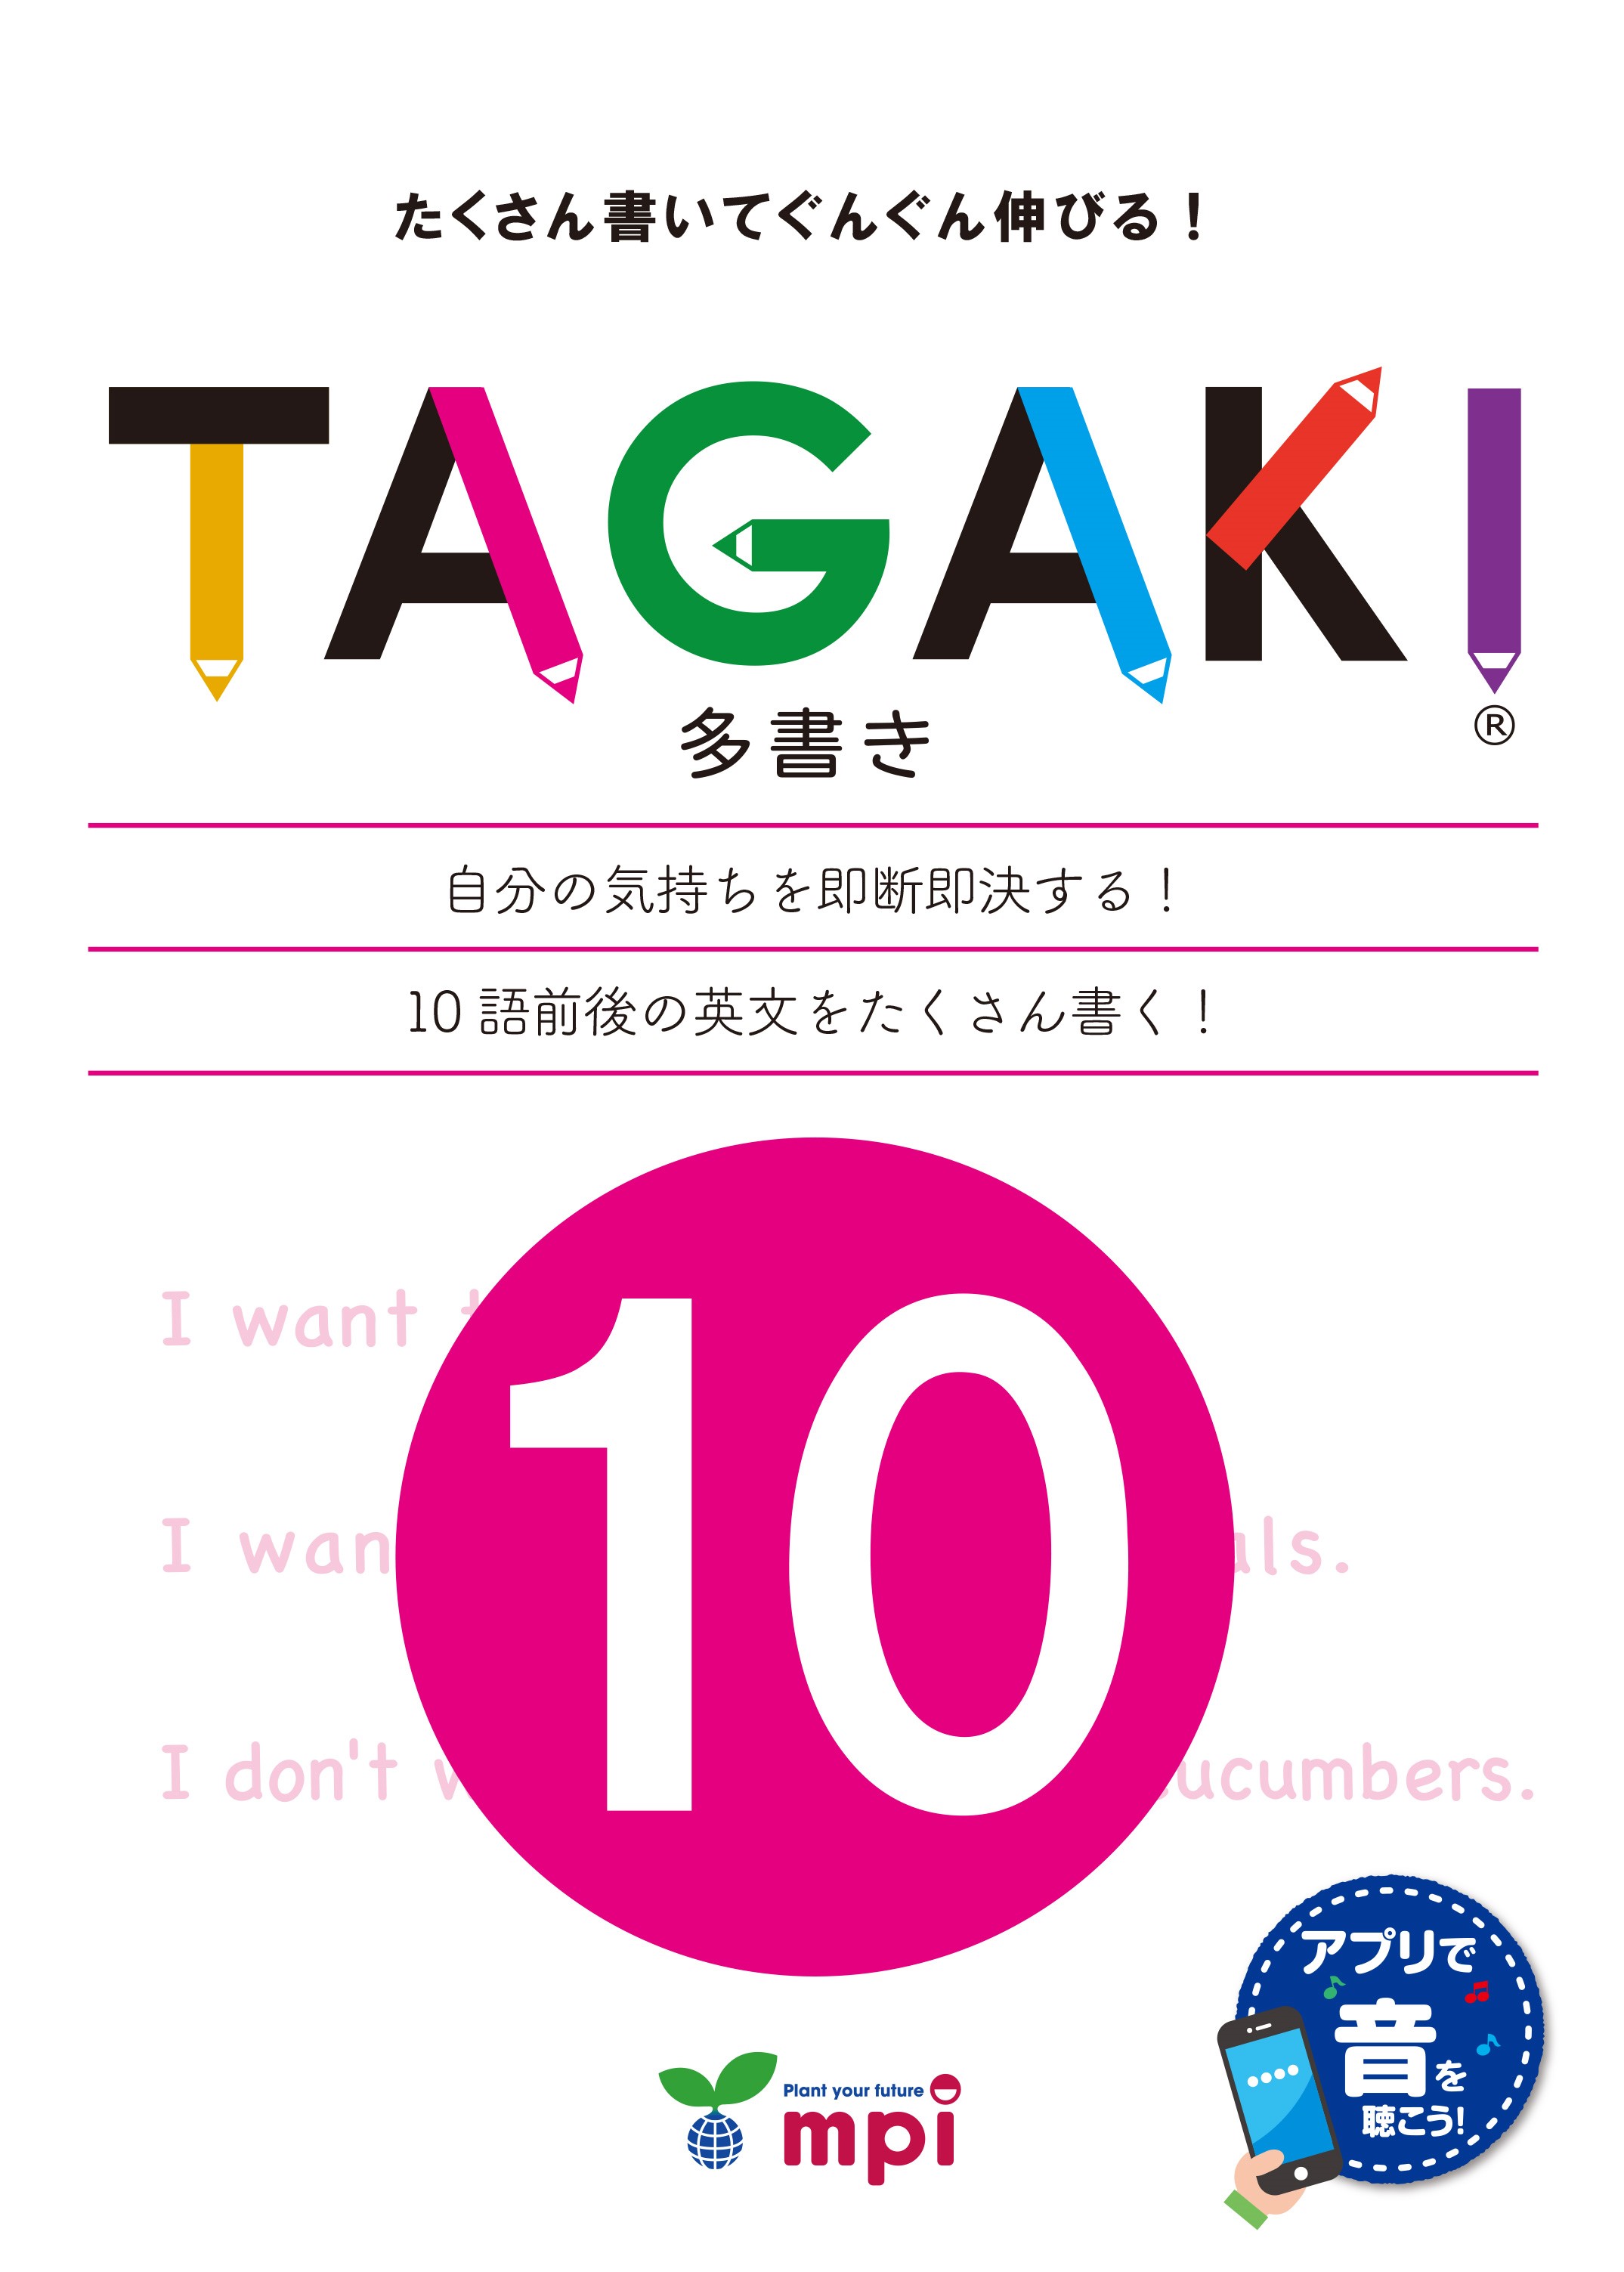 TAGAKI 10